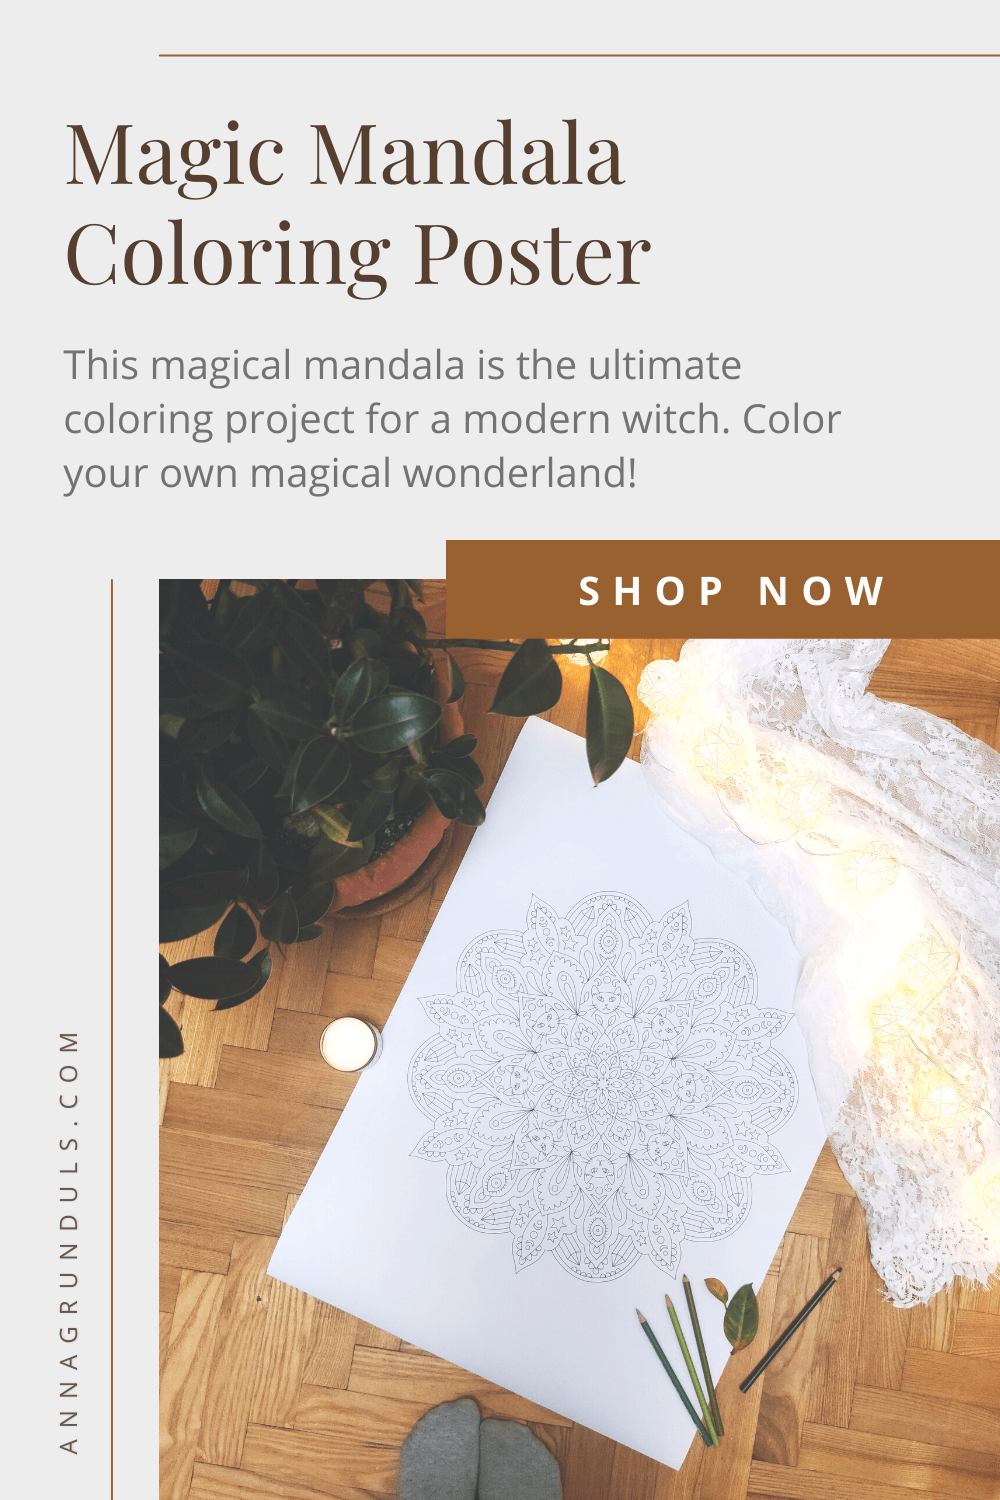 Magic Mandala Coloring Poster Pinterest Graphic